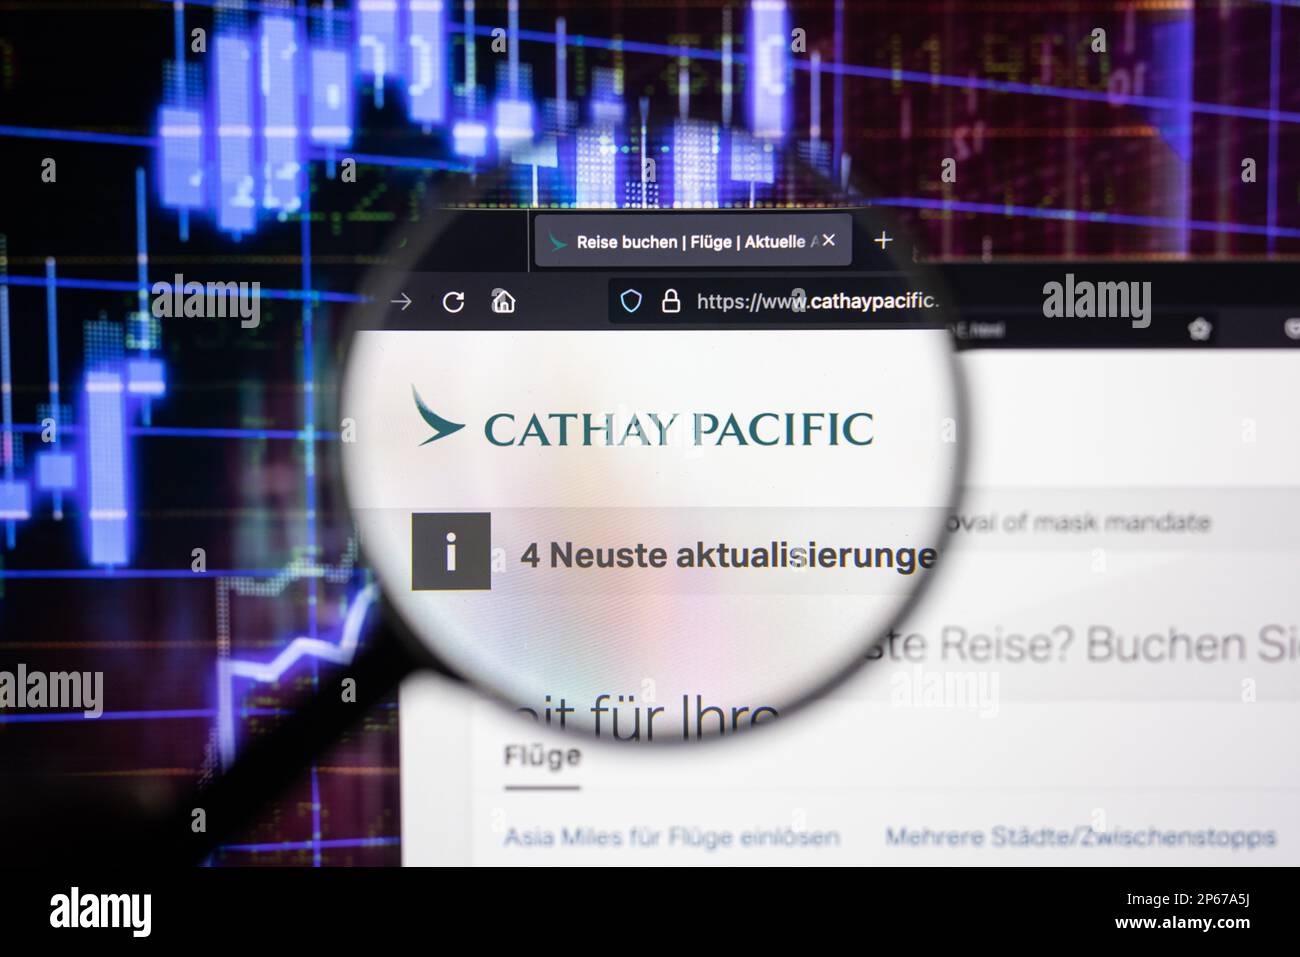 Cathay Pacific compagnia aerea logo su un sito web con blurry mercato azionario sviluppi in background, visto su uno schermo del computer Foto Stock